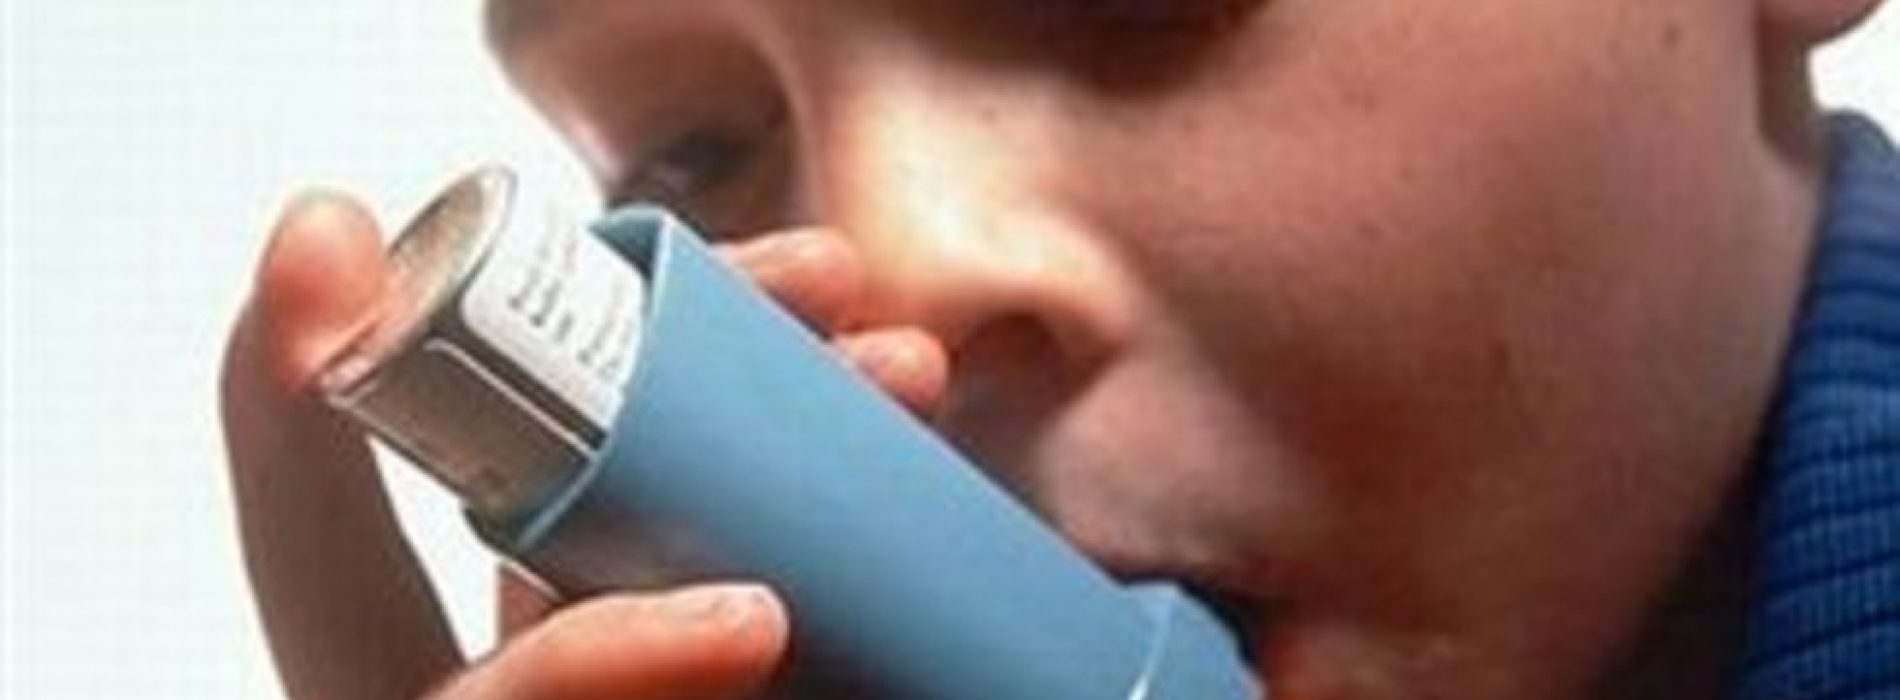 Meer dan de helft van kinderen met astma blijkt de ziekte helemaal niet te hebben